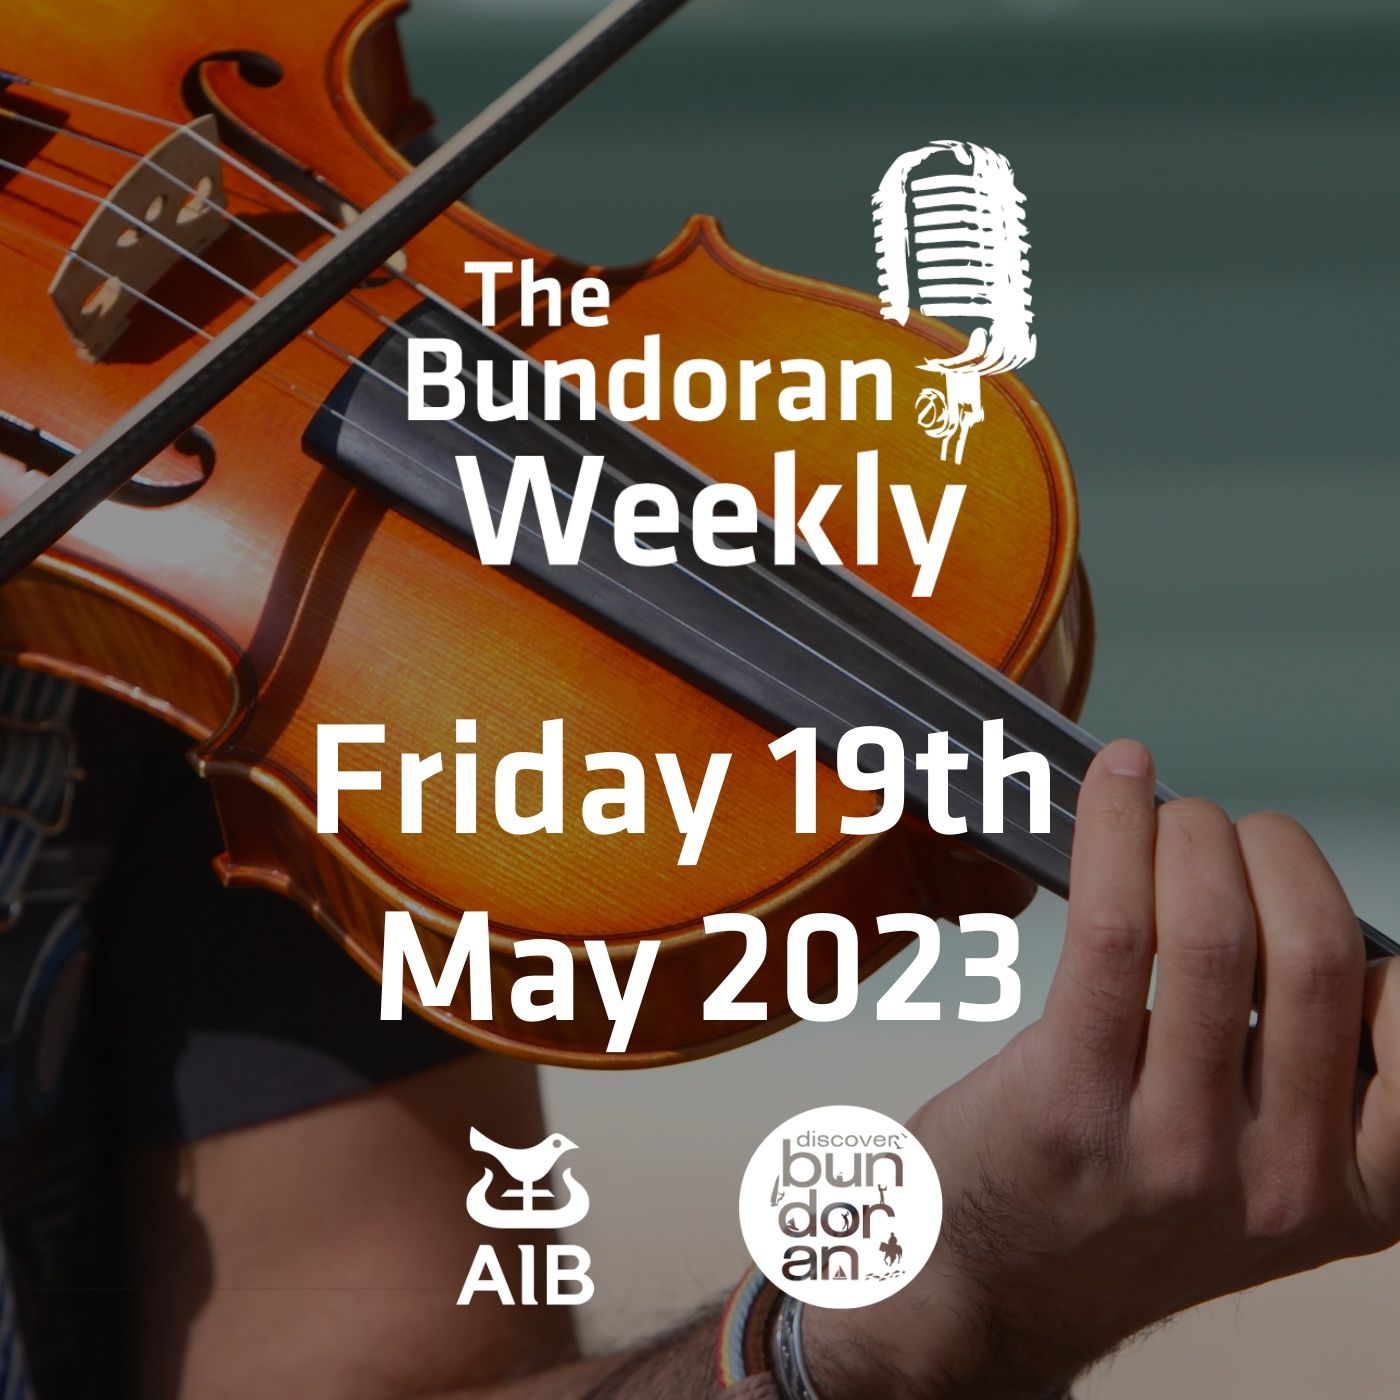 232 - The Bundoran Weekly - Friday 19th May 2023